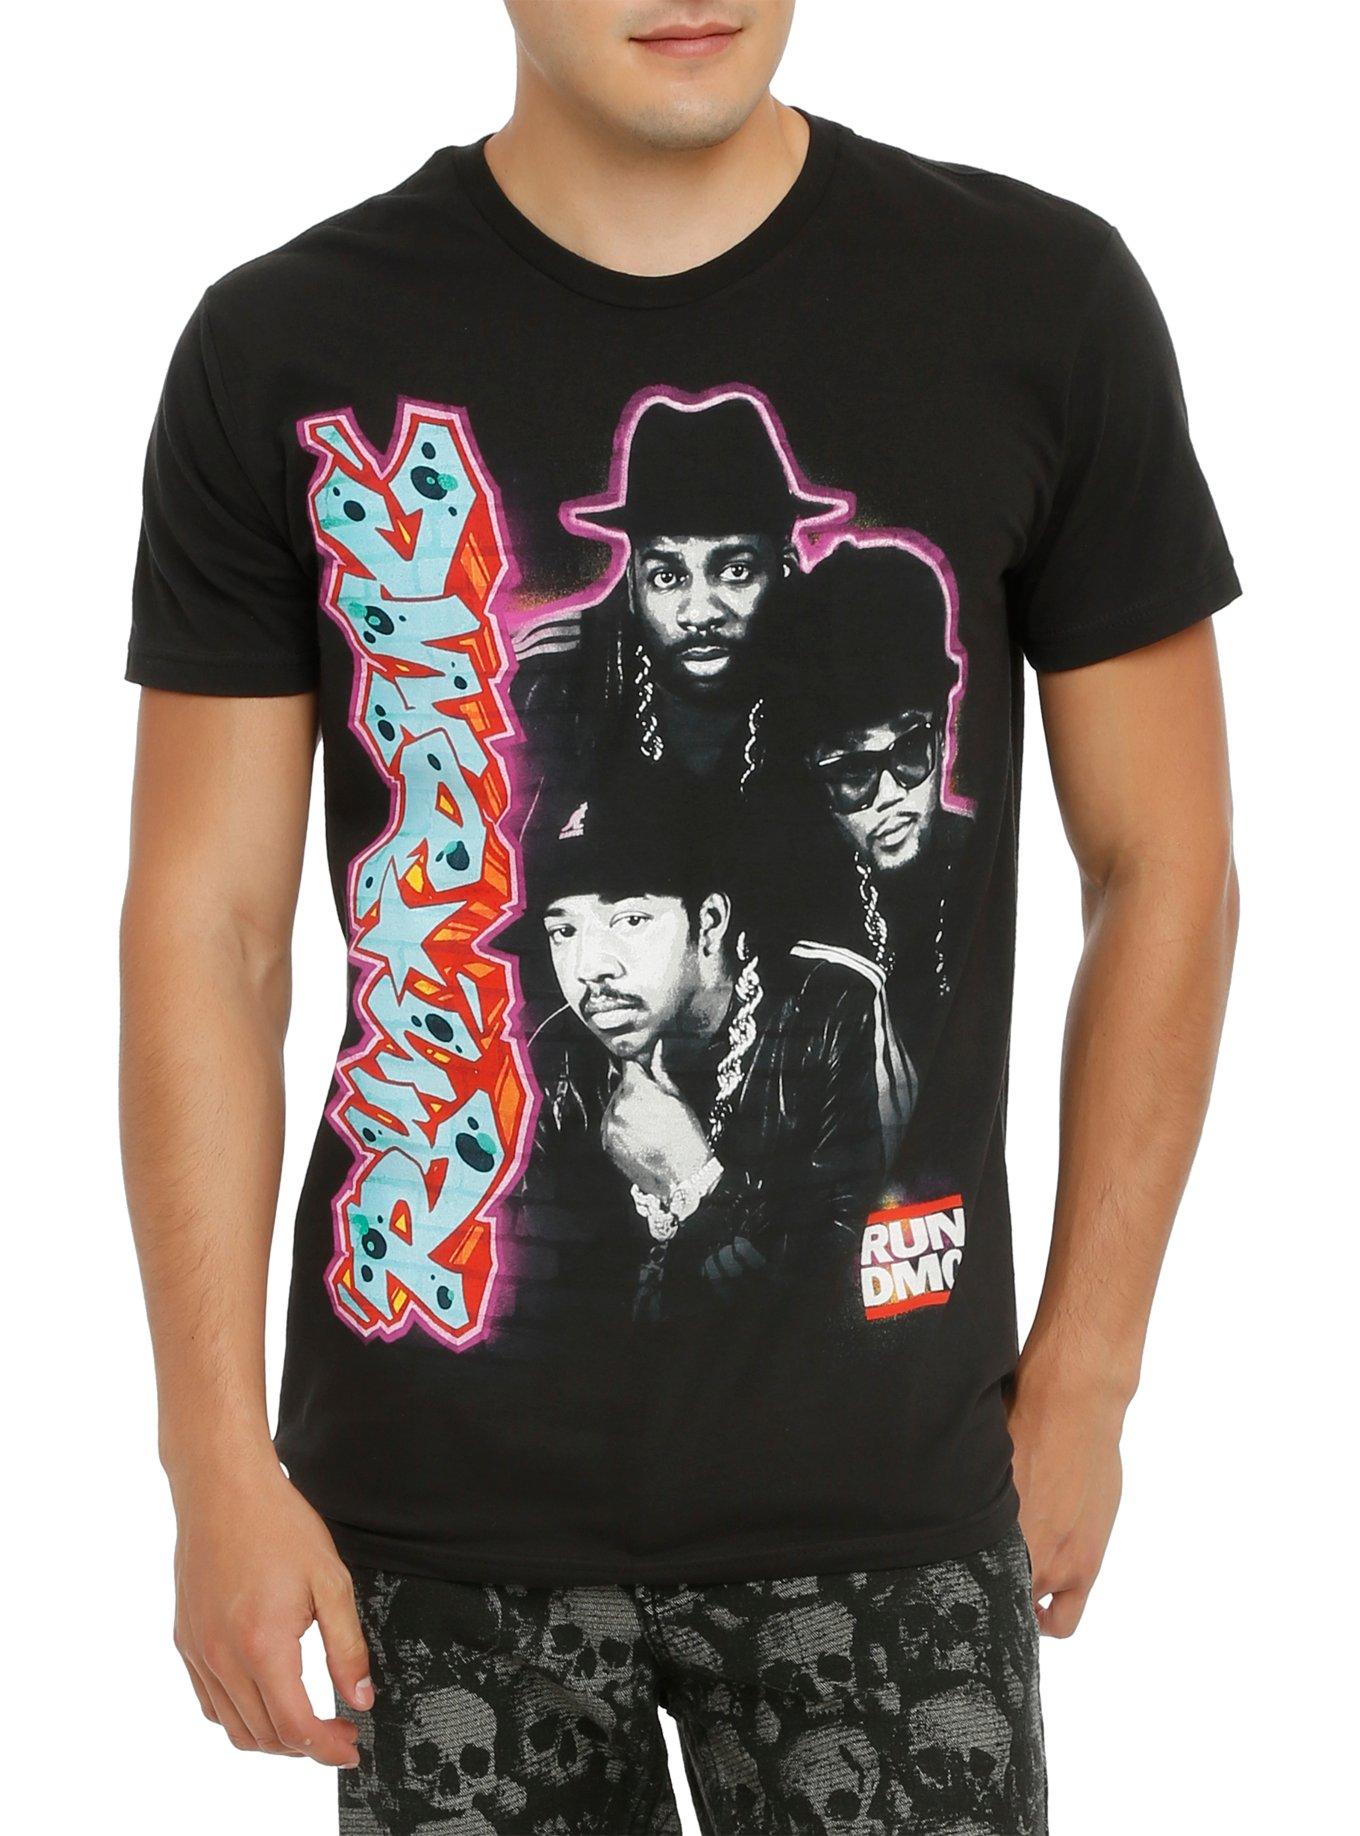 Run-DMC Graffiti T-Shirt, BLACK, hi-res